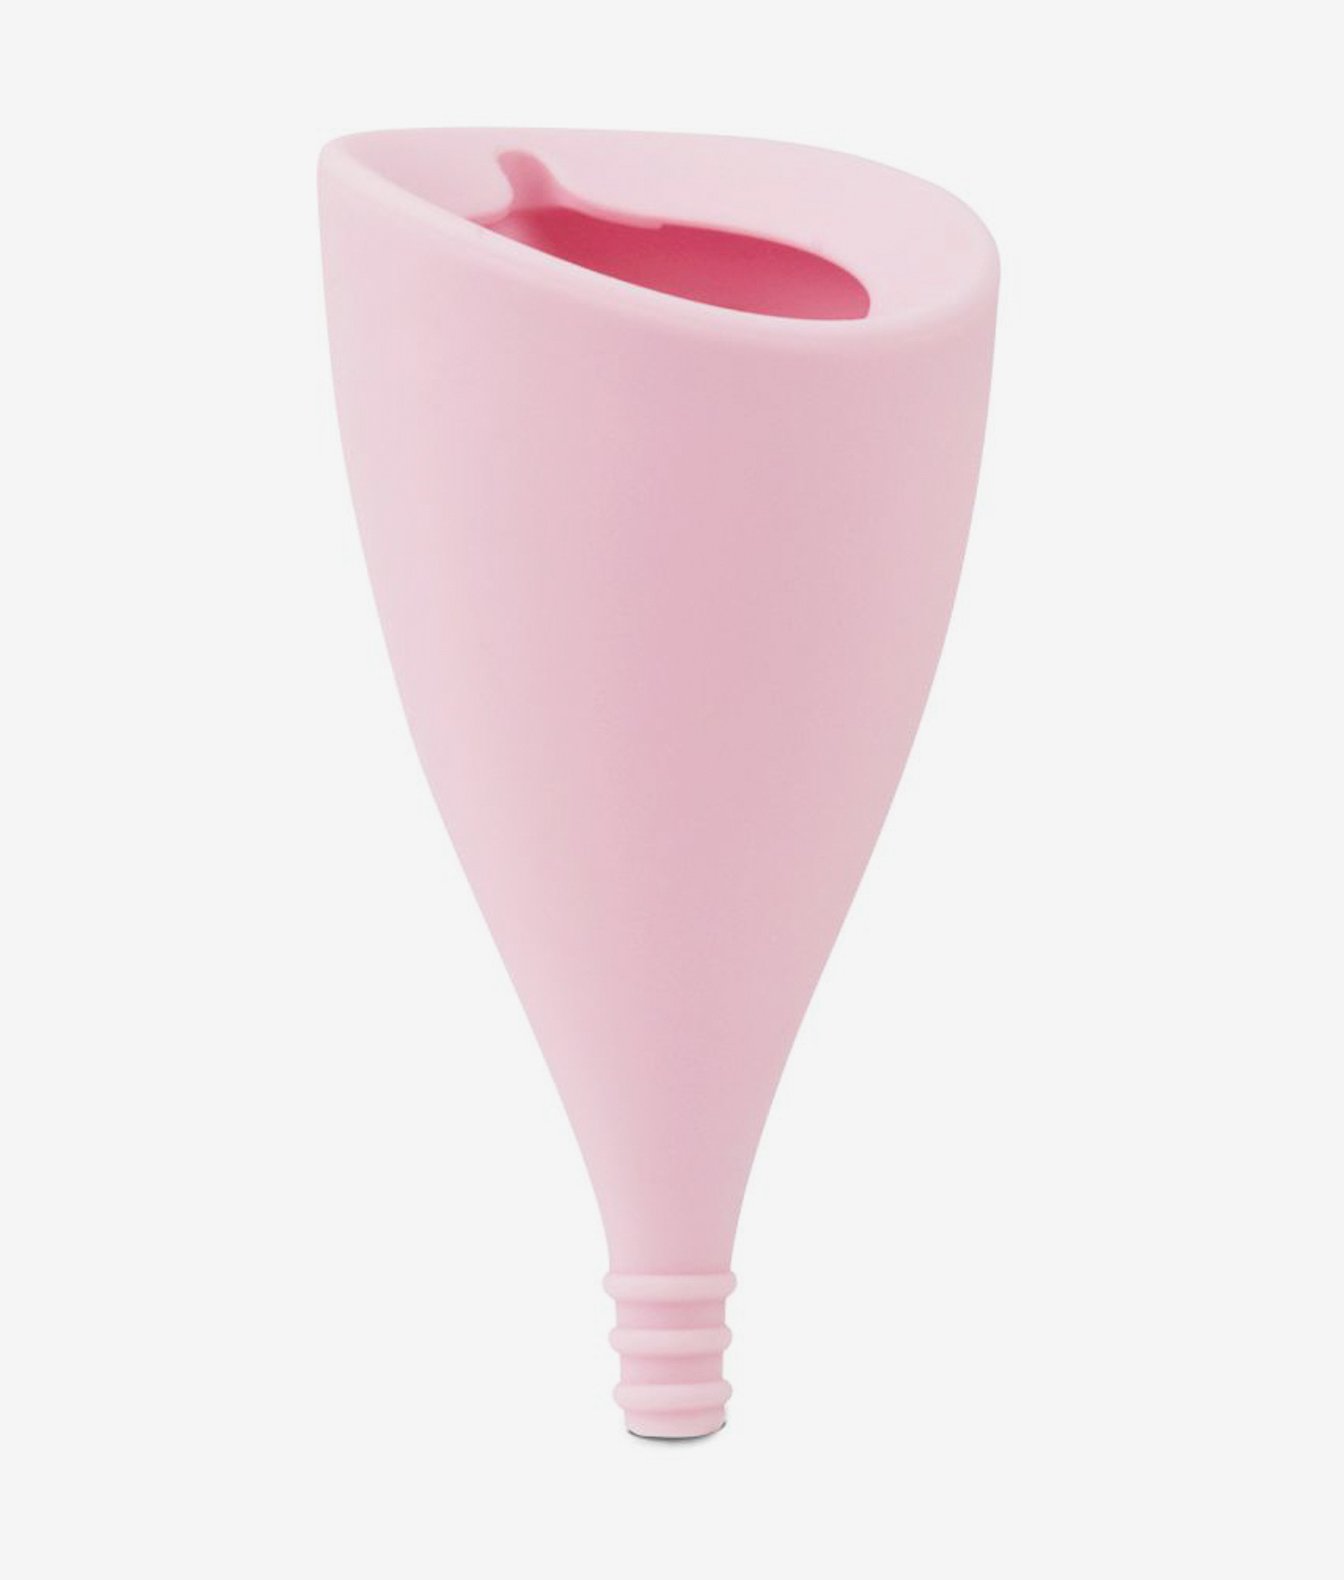 Intimina Lily Cup A kubeczek menstruacyjny